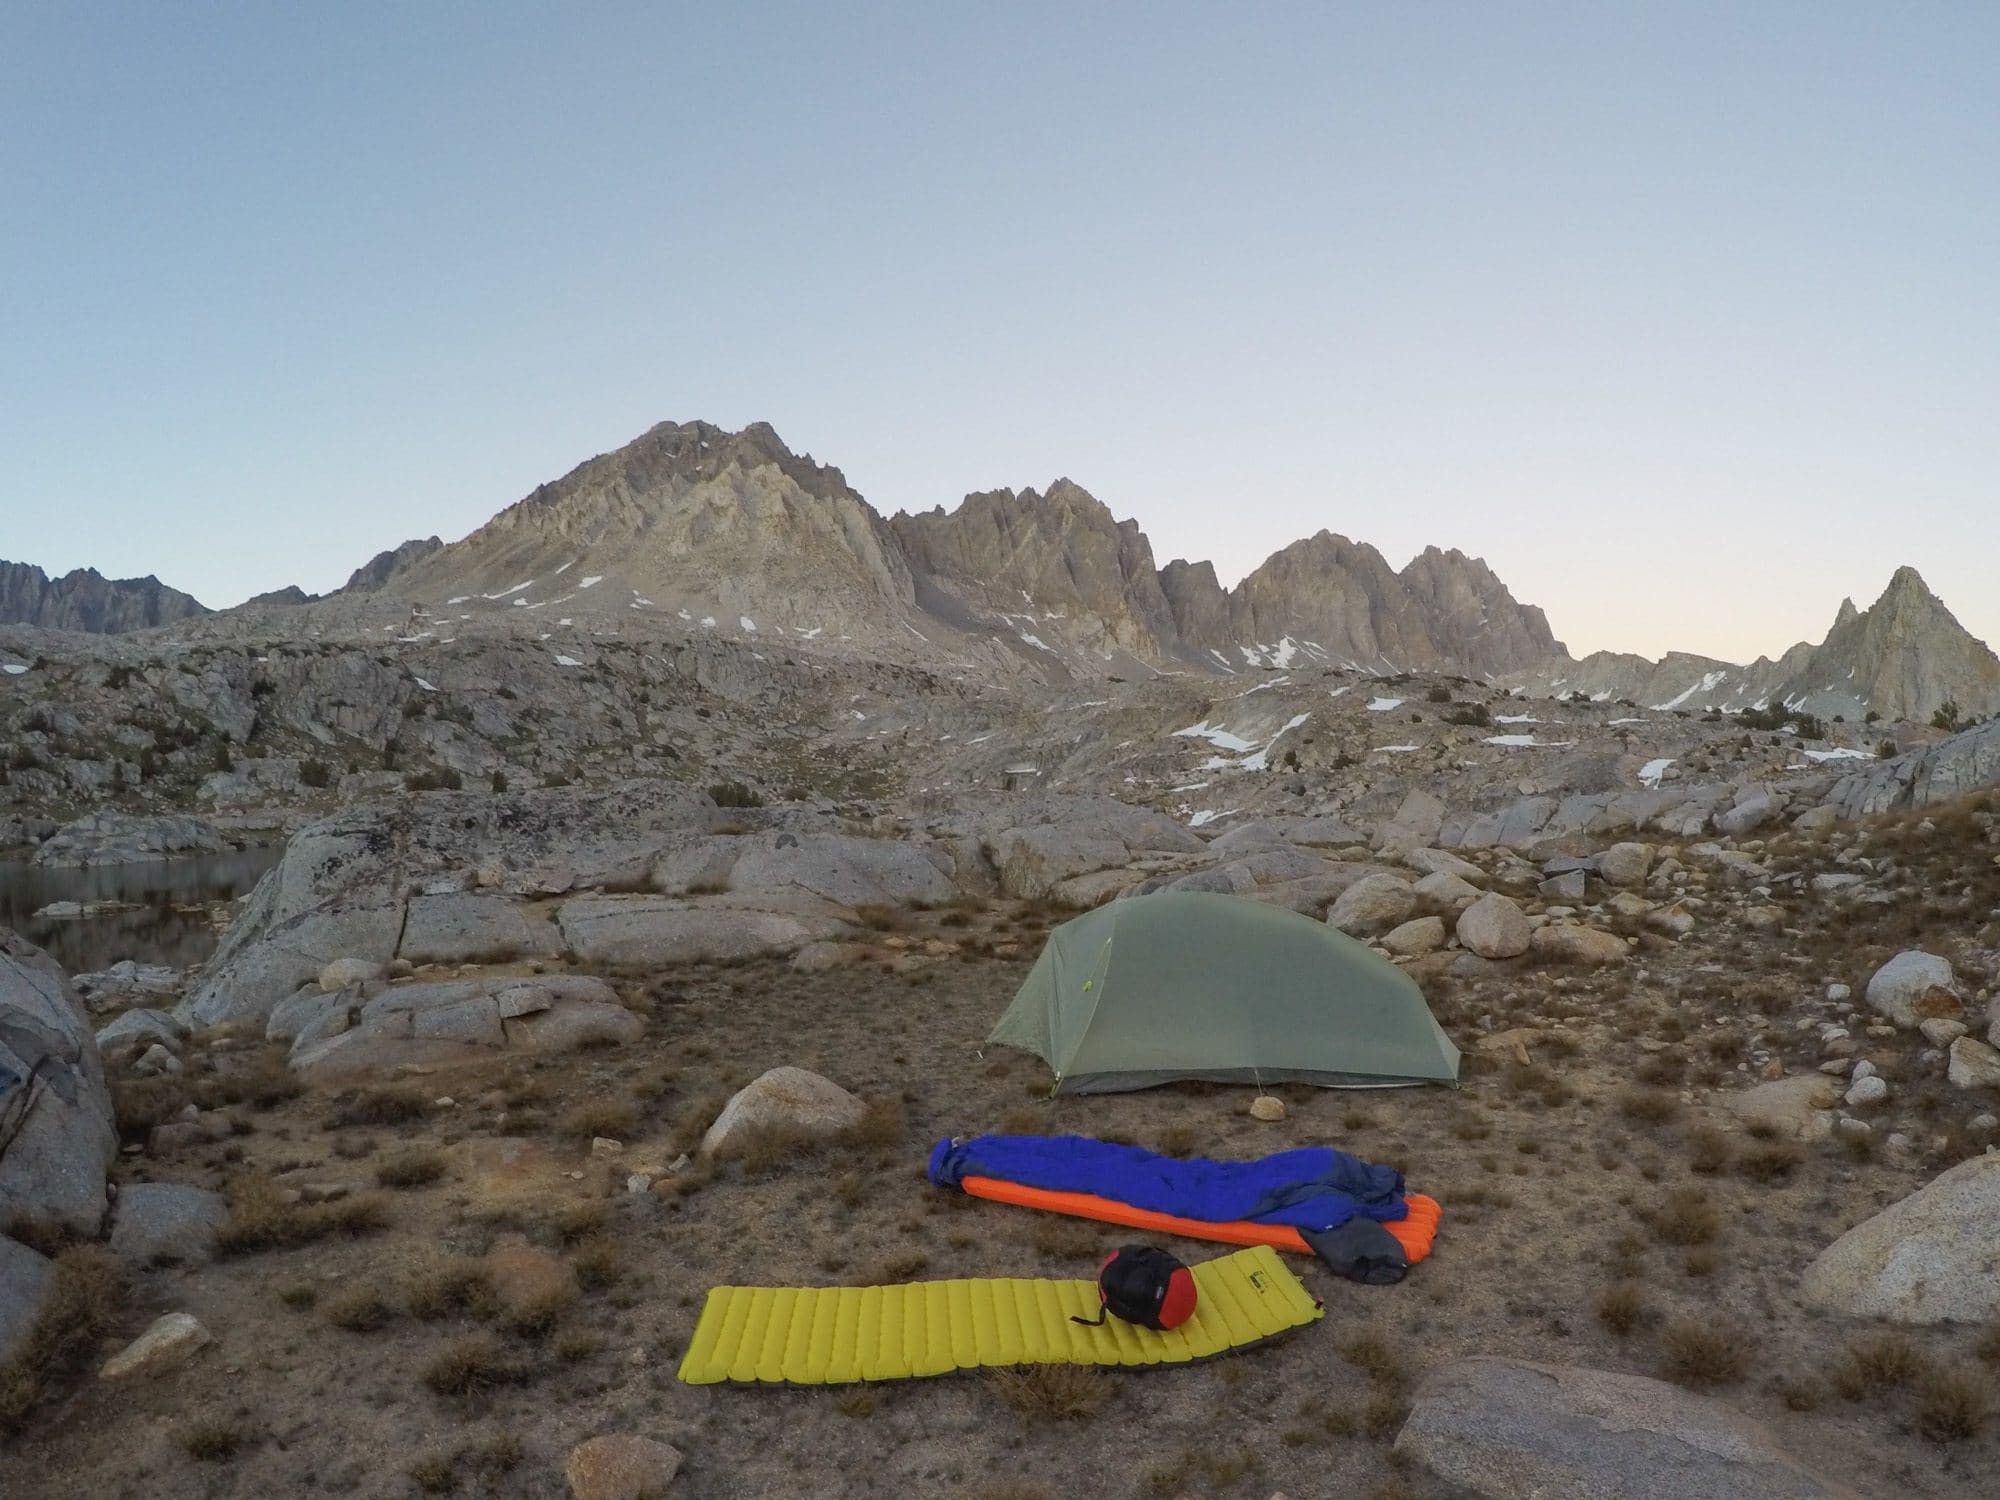 尼莫·张张的睡袋放在外面，旁边是一个背包睡袋和帐篷，远处是崎岖不平的山脉